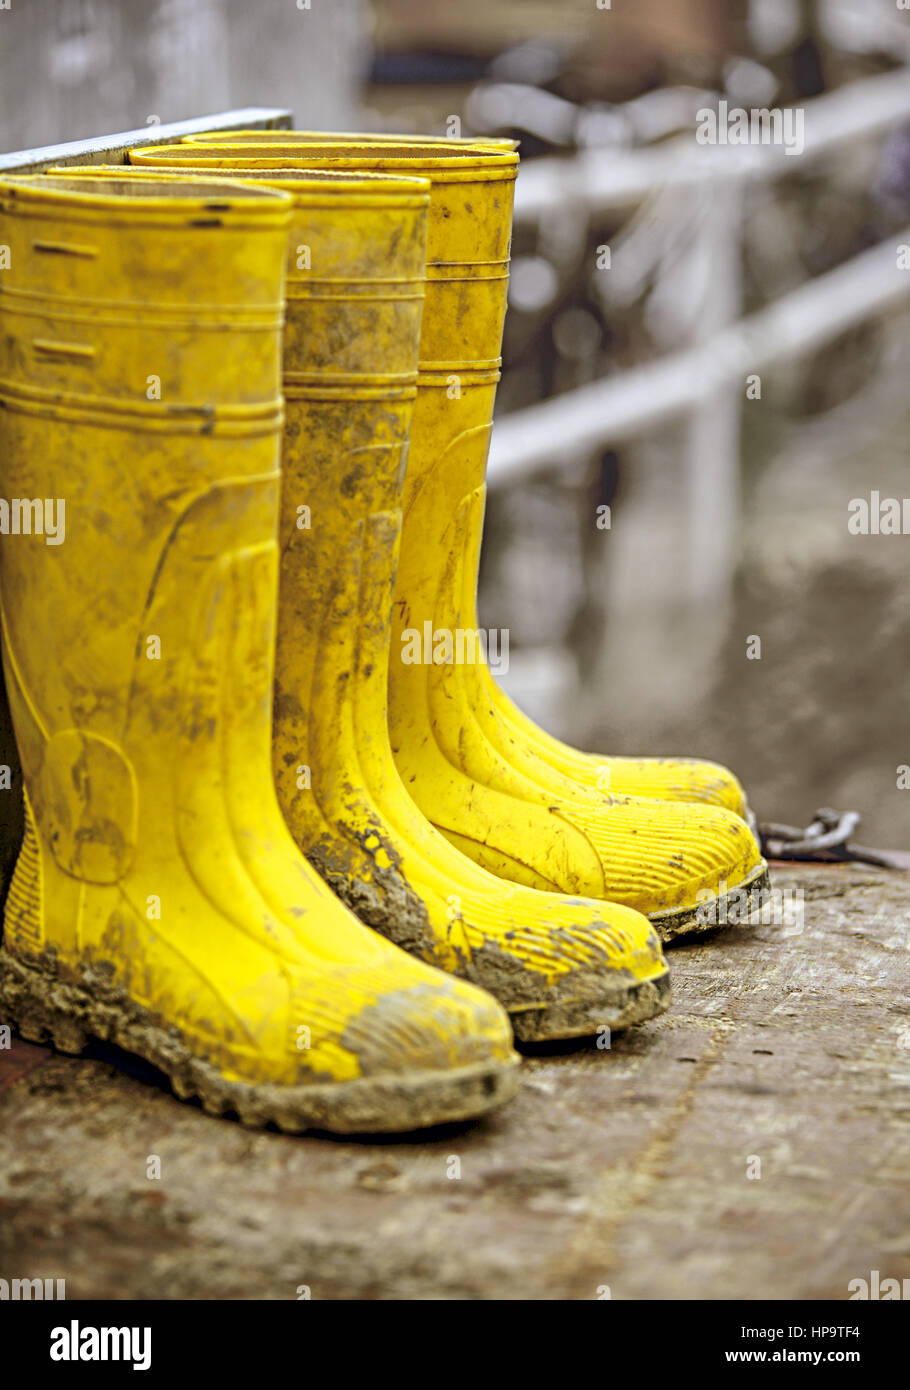 Gelbe Gummistiefel auf Baustelle Stock Photo - Alamy